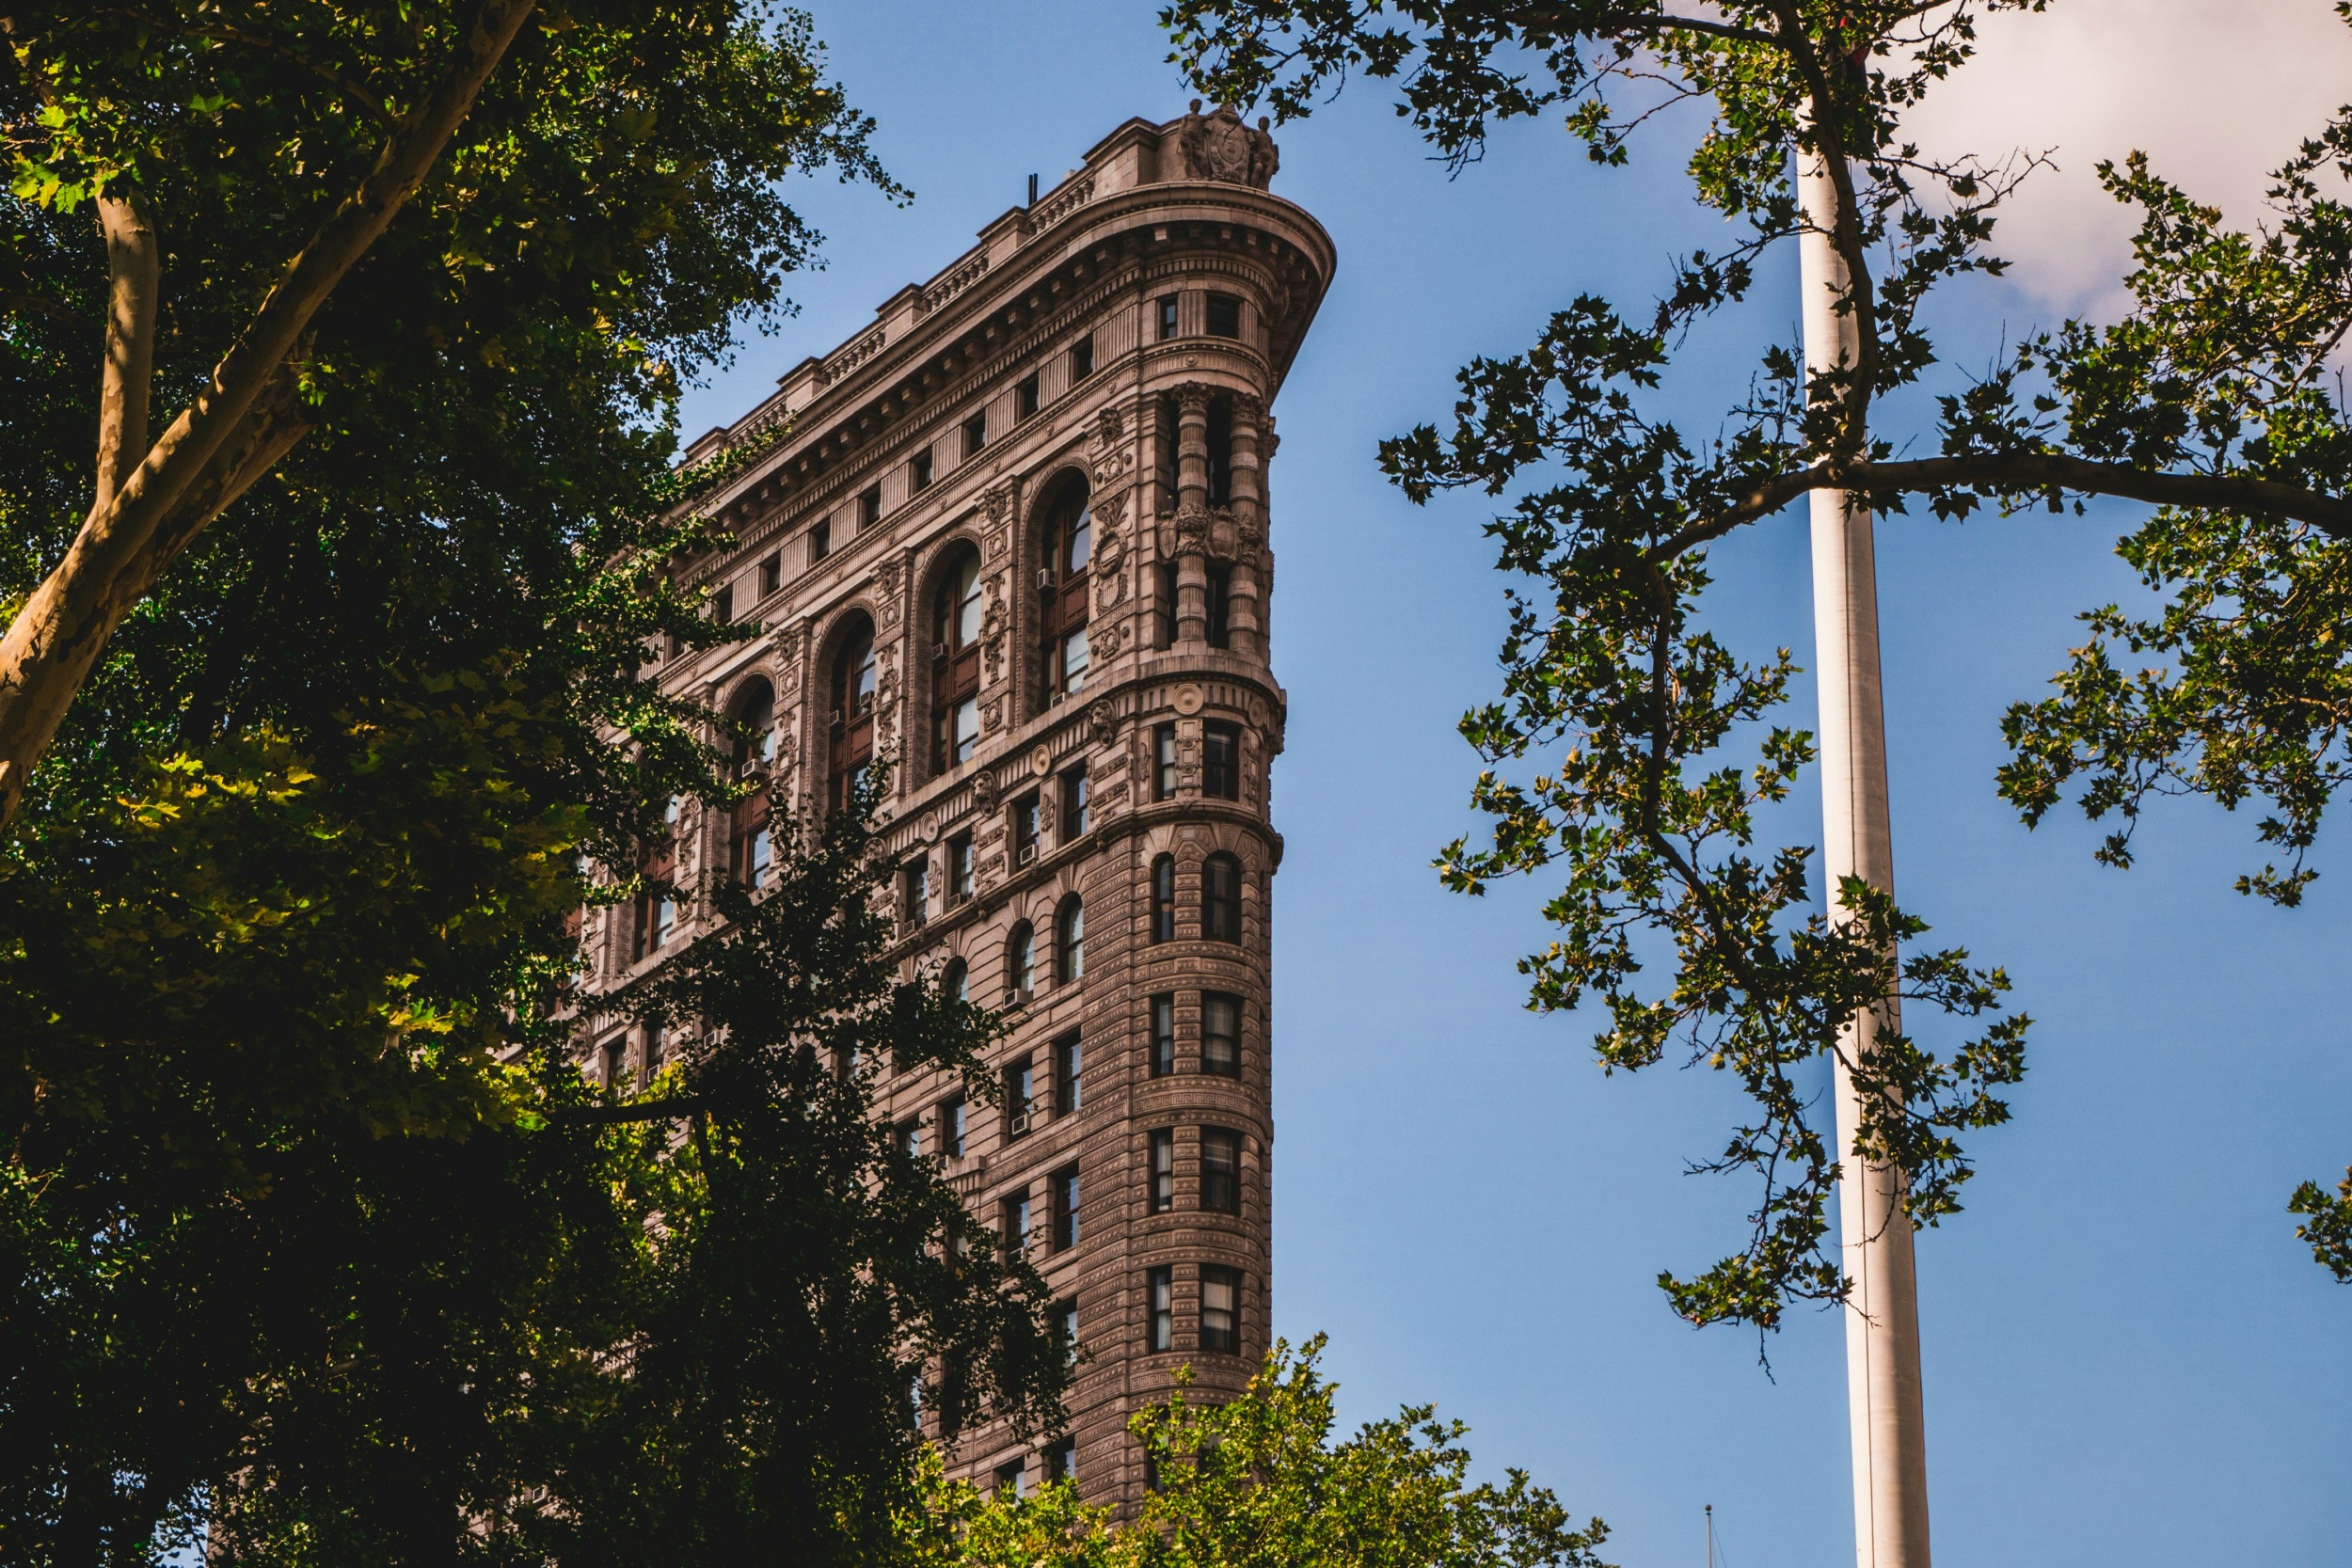 Zu den ikonischsten Sehenswürdigkeiten in New York gehört sicherlich das Flatiron Building